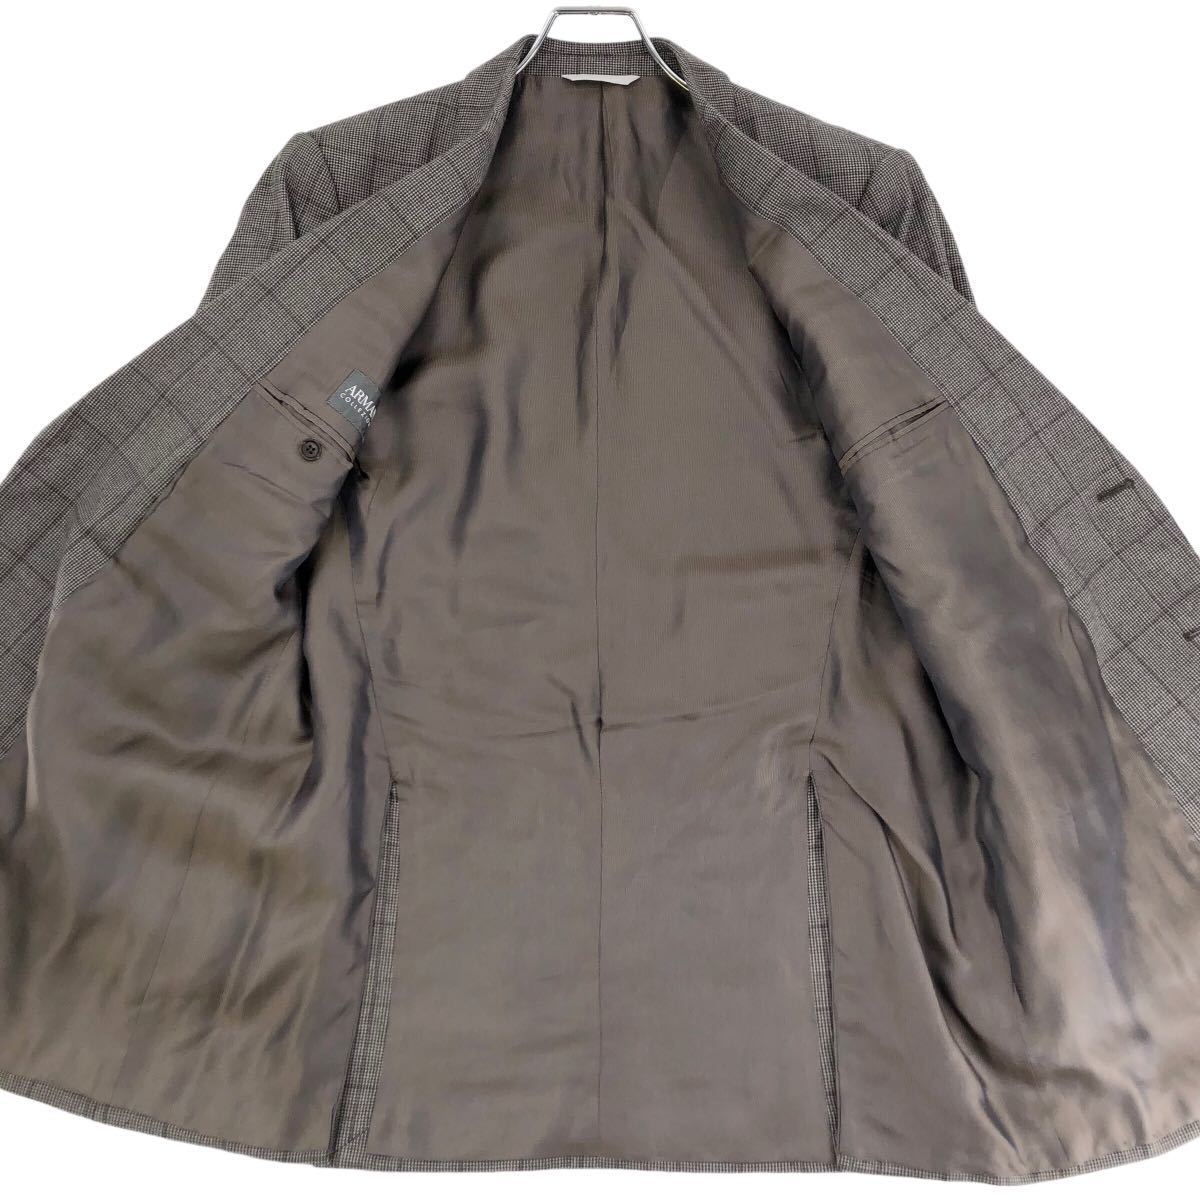  прекрасный товар Armani koretso-niARMANI COLLEZIONI костюм выставить tailored jacket брюки слаксы общий обратная сторона проверка кашемир .